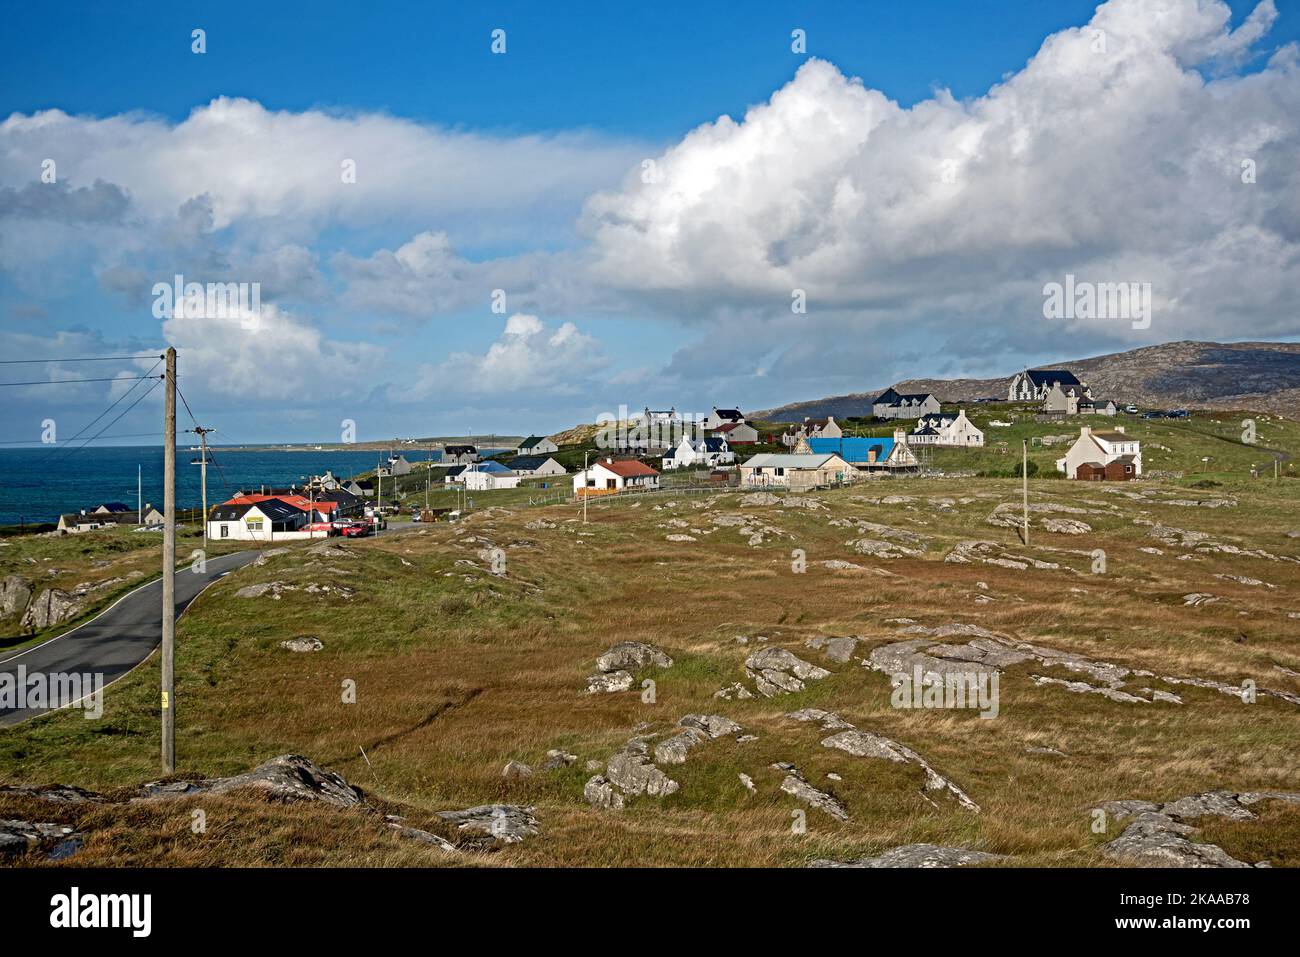 The Village, Am Baile, on the Isle of Eriskay, Outer Hebrides, Scotland, UK. Stock Photo